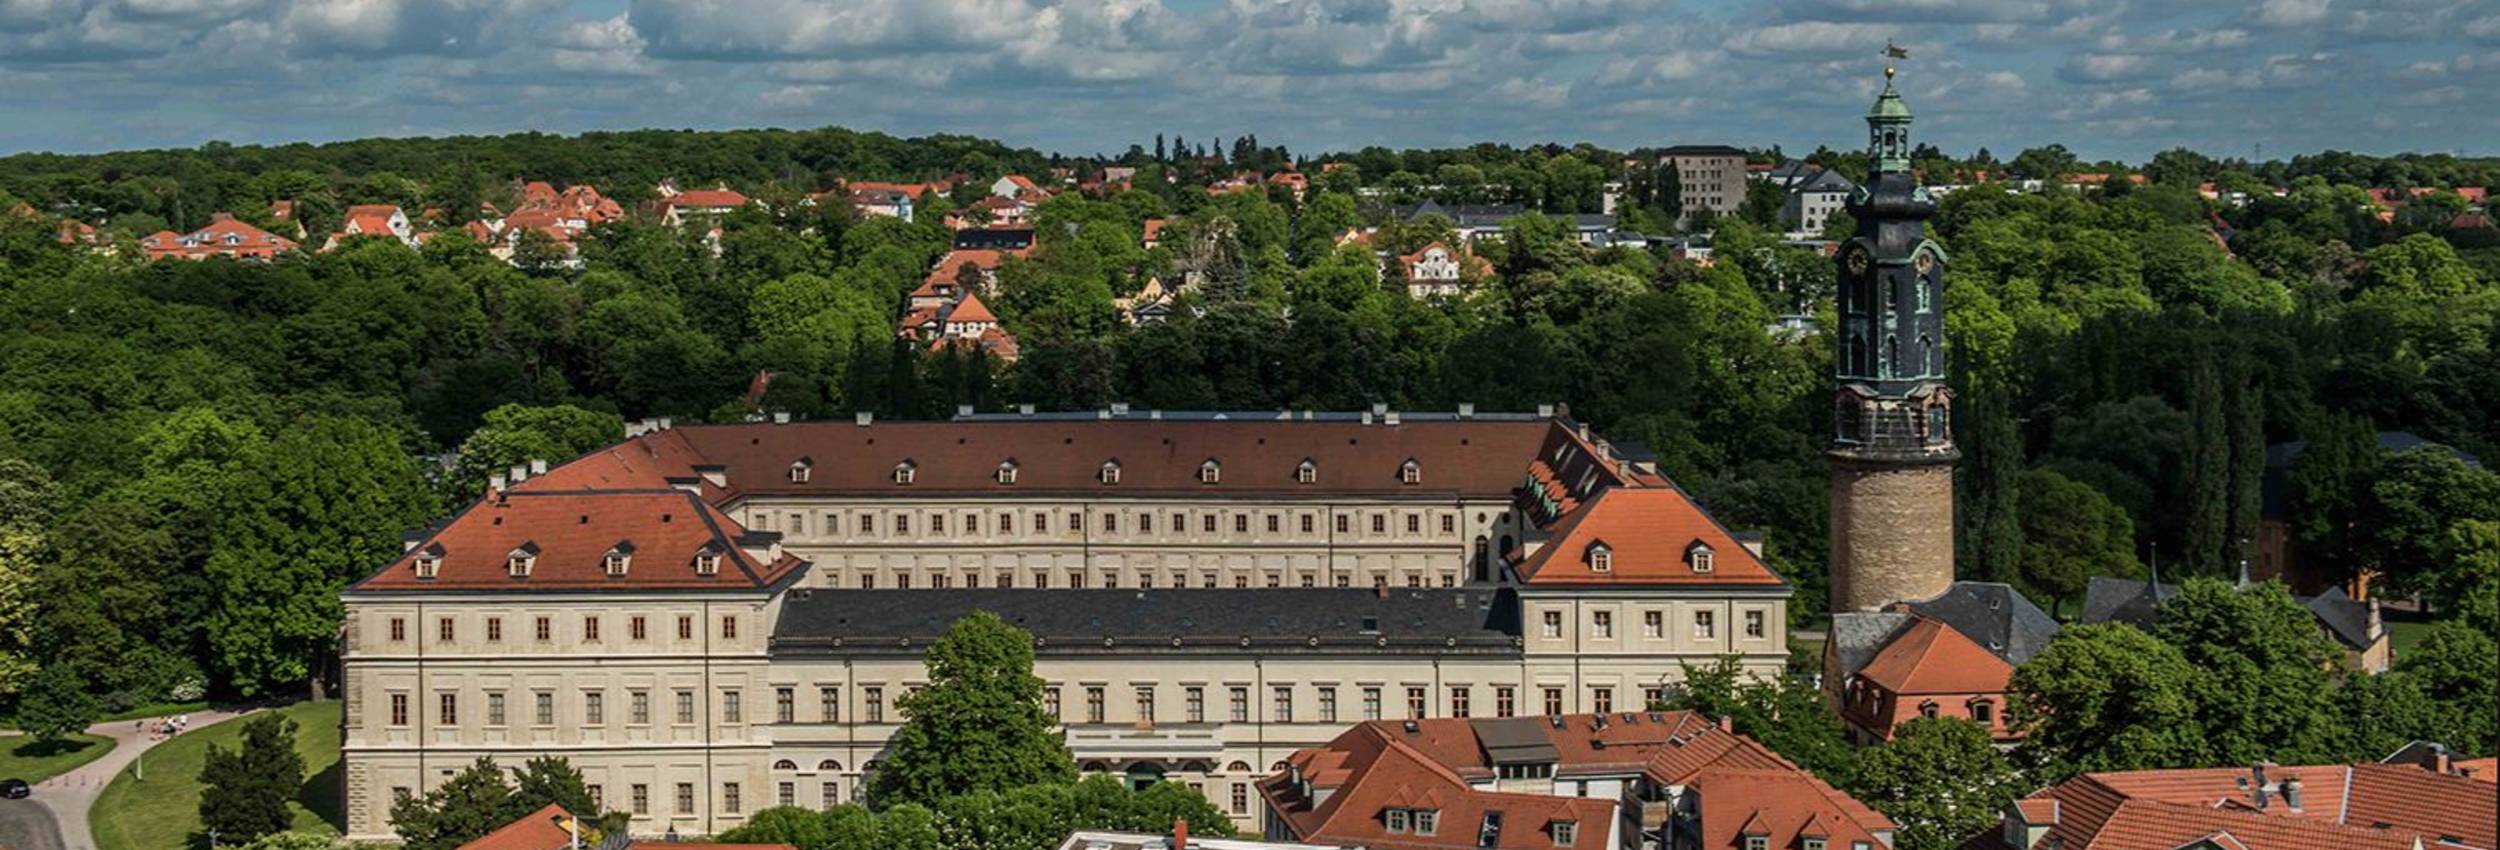 Blick auf das Weimarer Stadtschloss